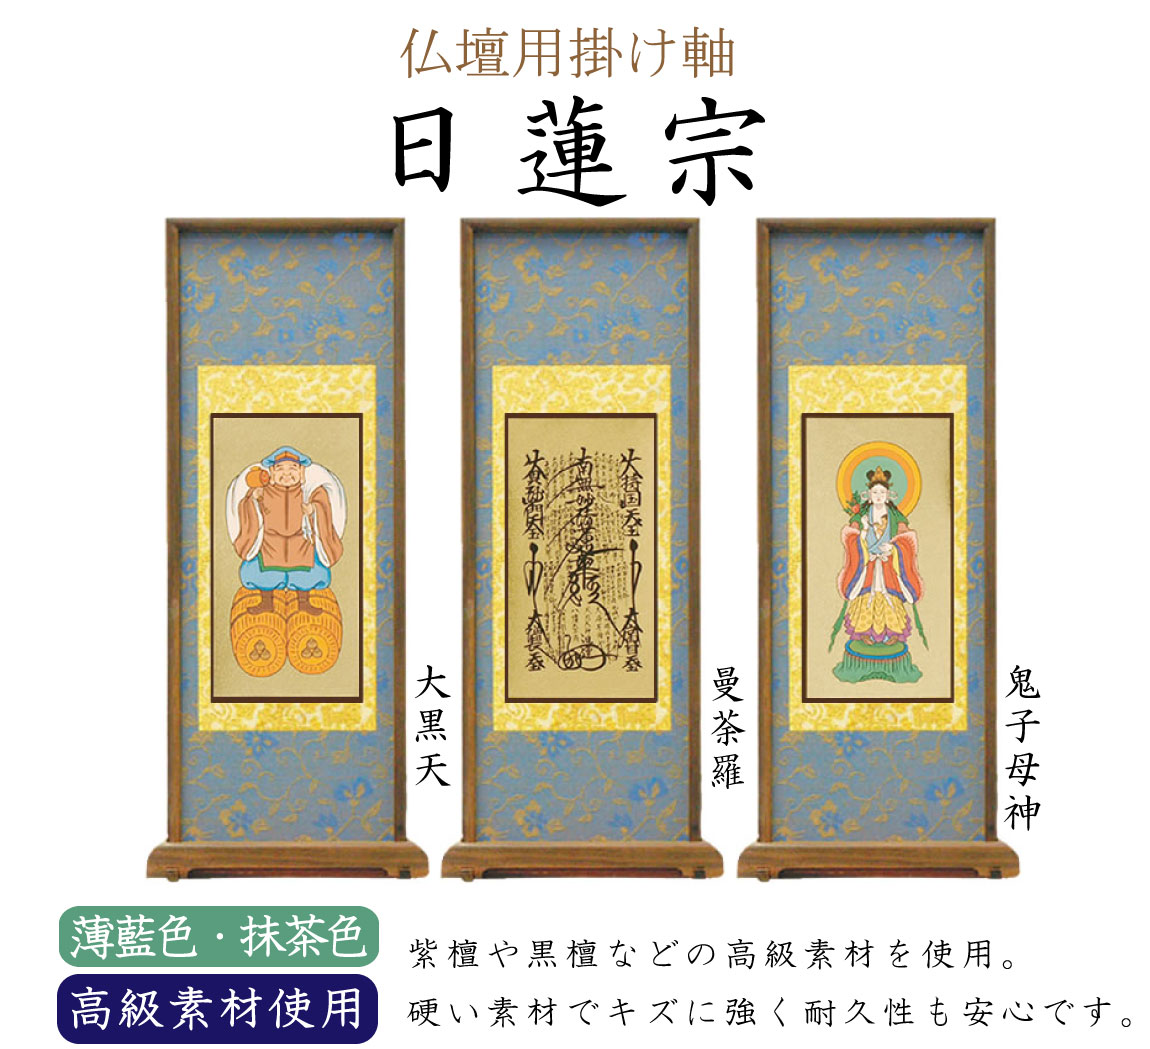 【高級素材】日蓮宗の仏壇用スタンド掛け軸。中央（ご本尊）には曼荼羅、向かって右には鬼子母神、左には大黒天がかかります。高級素材の紫檀や黒檀が使用されています。